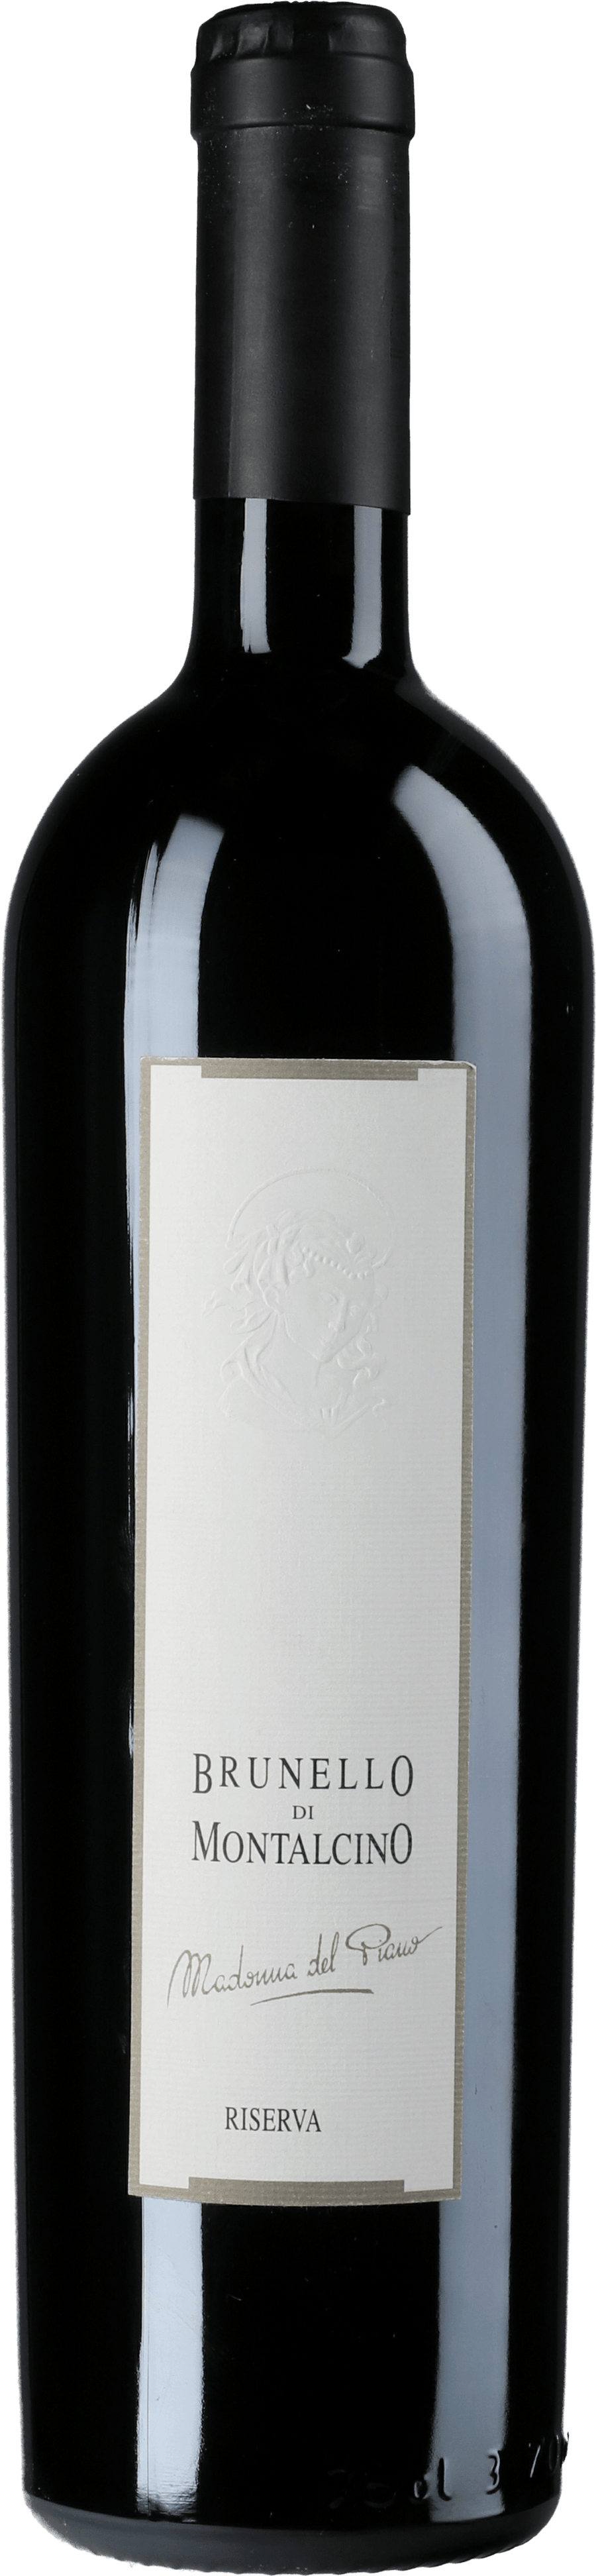 Valdicava Madonna del Piano Brunello di Montalcino Riserva 2013 wine bottle